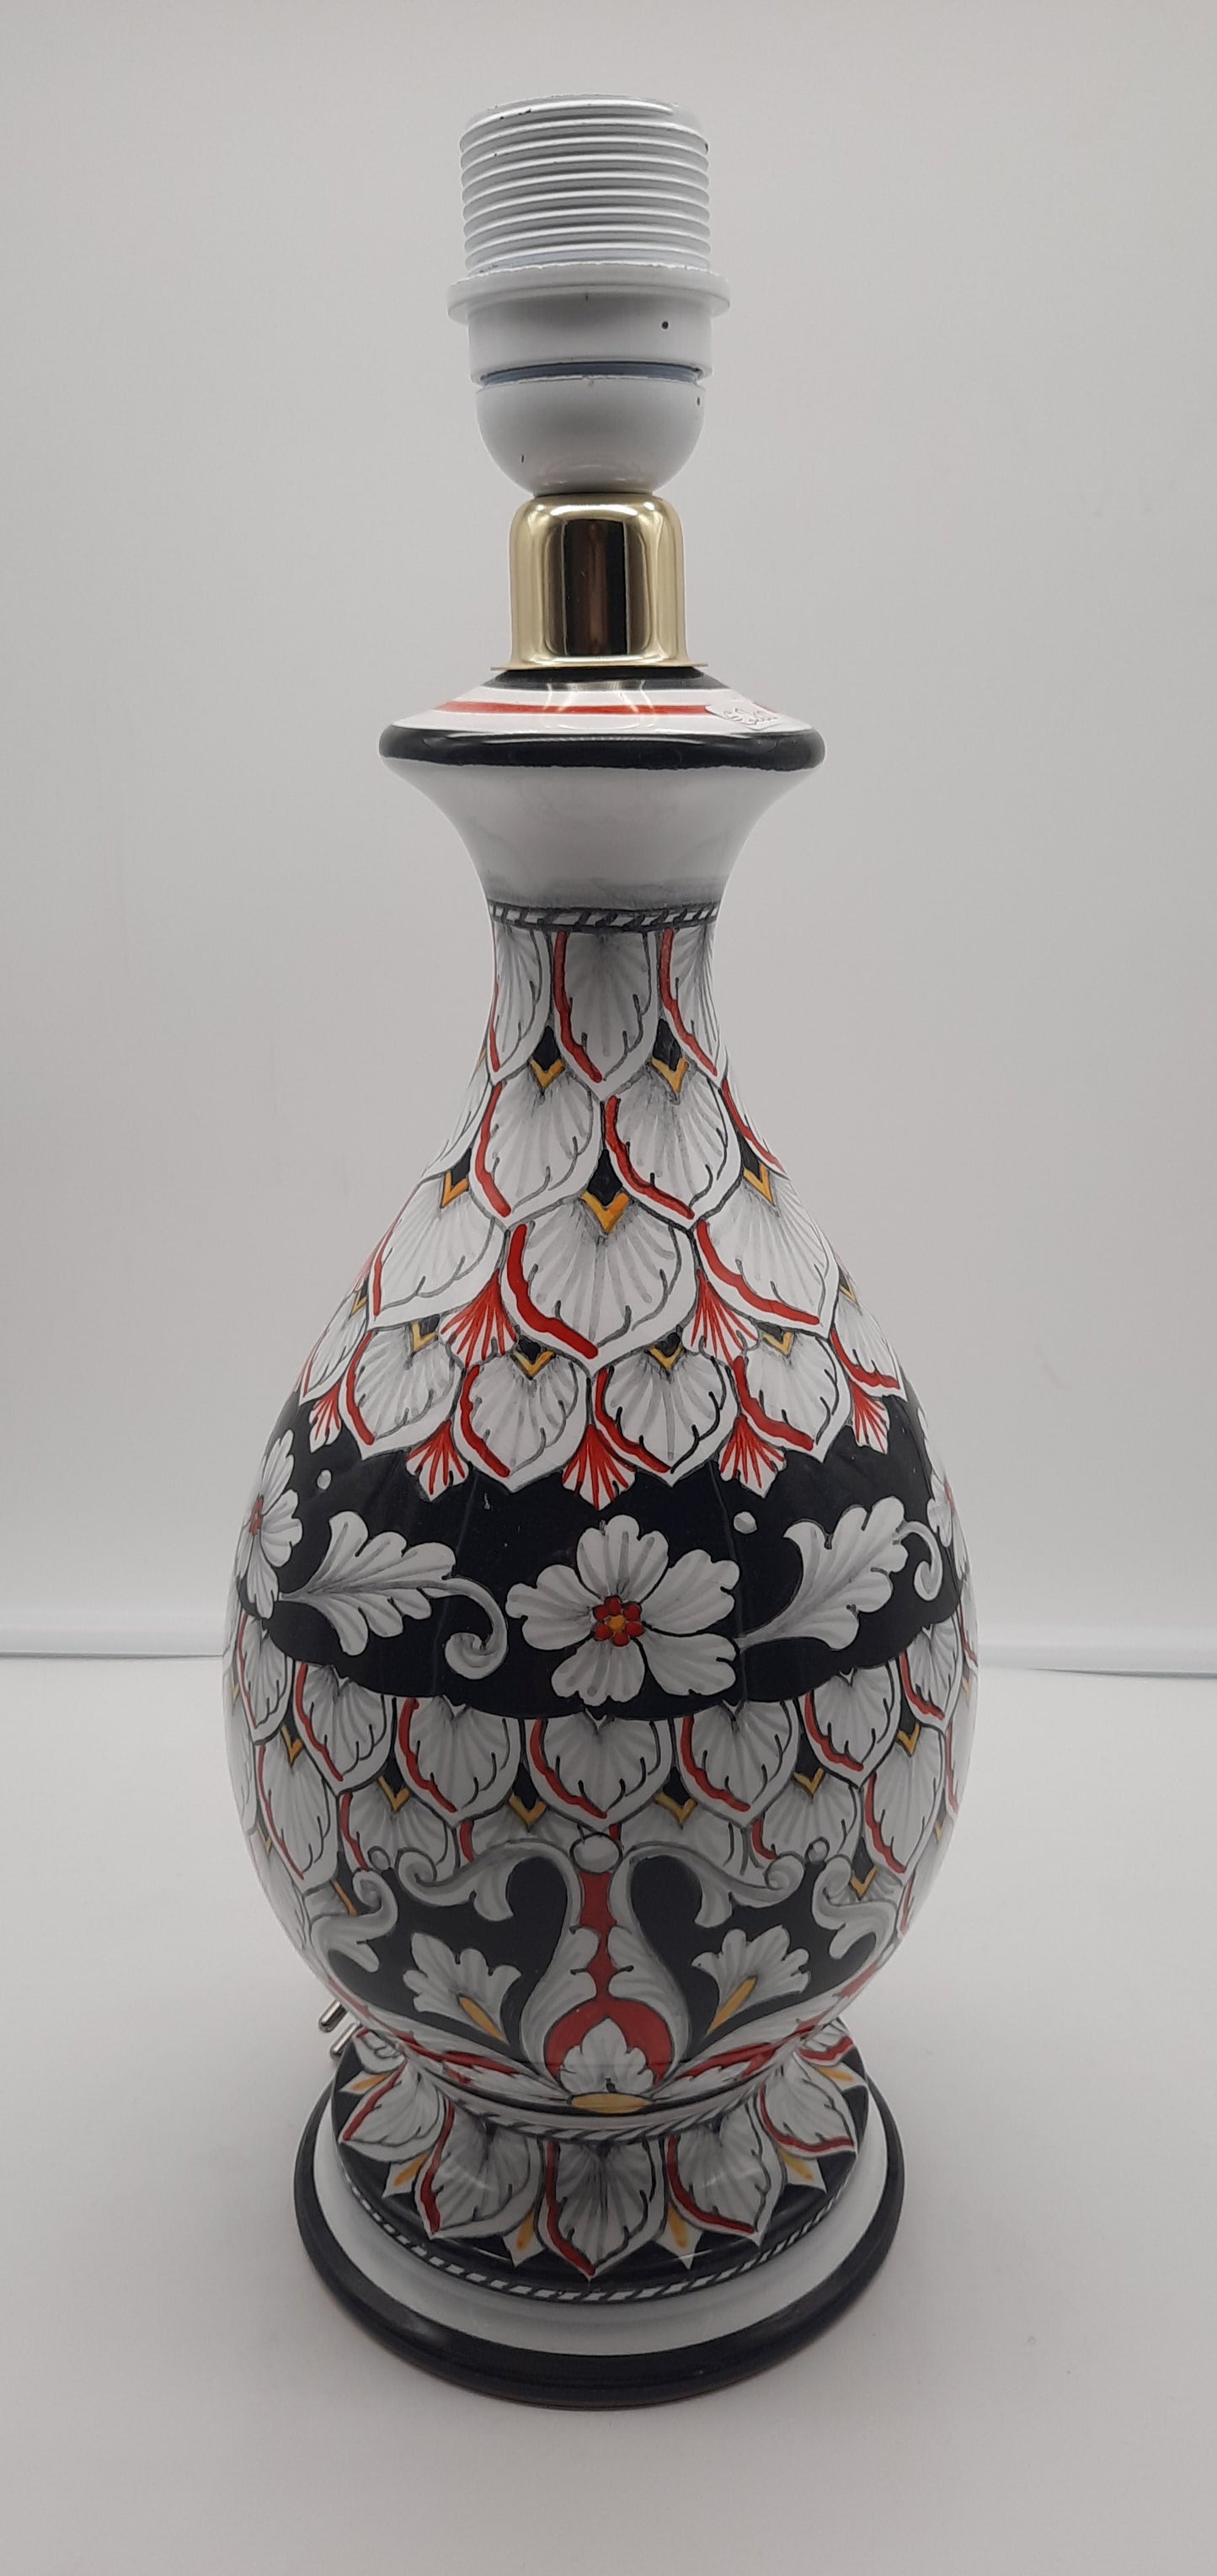 Lampada cm 30 (con cappello incluso) in ceramica dipinta a mano. Colori moderni per un disegno che prende spunto dalla tradizione